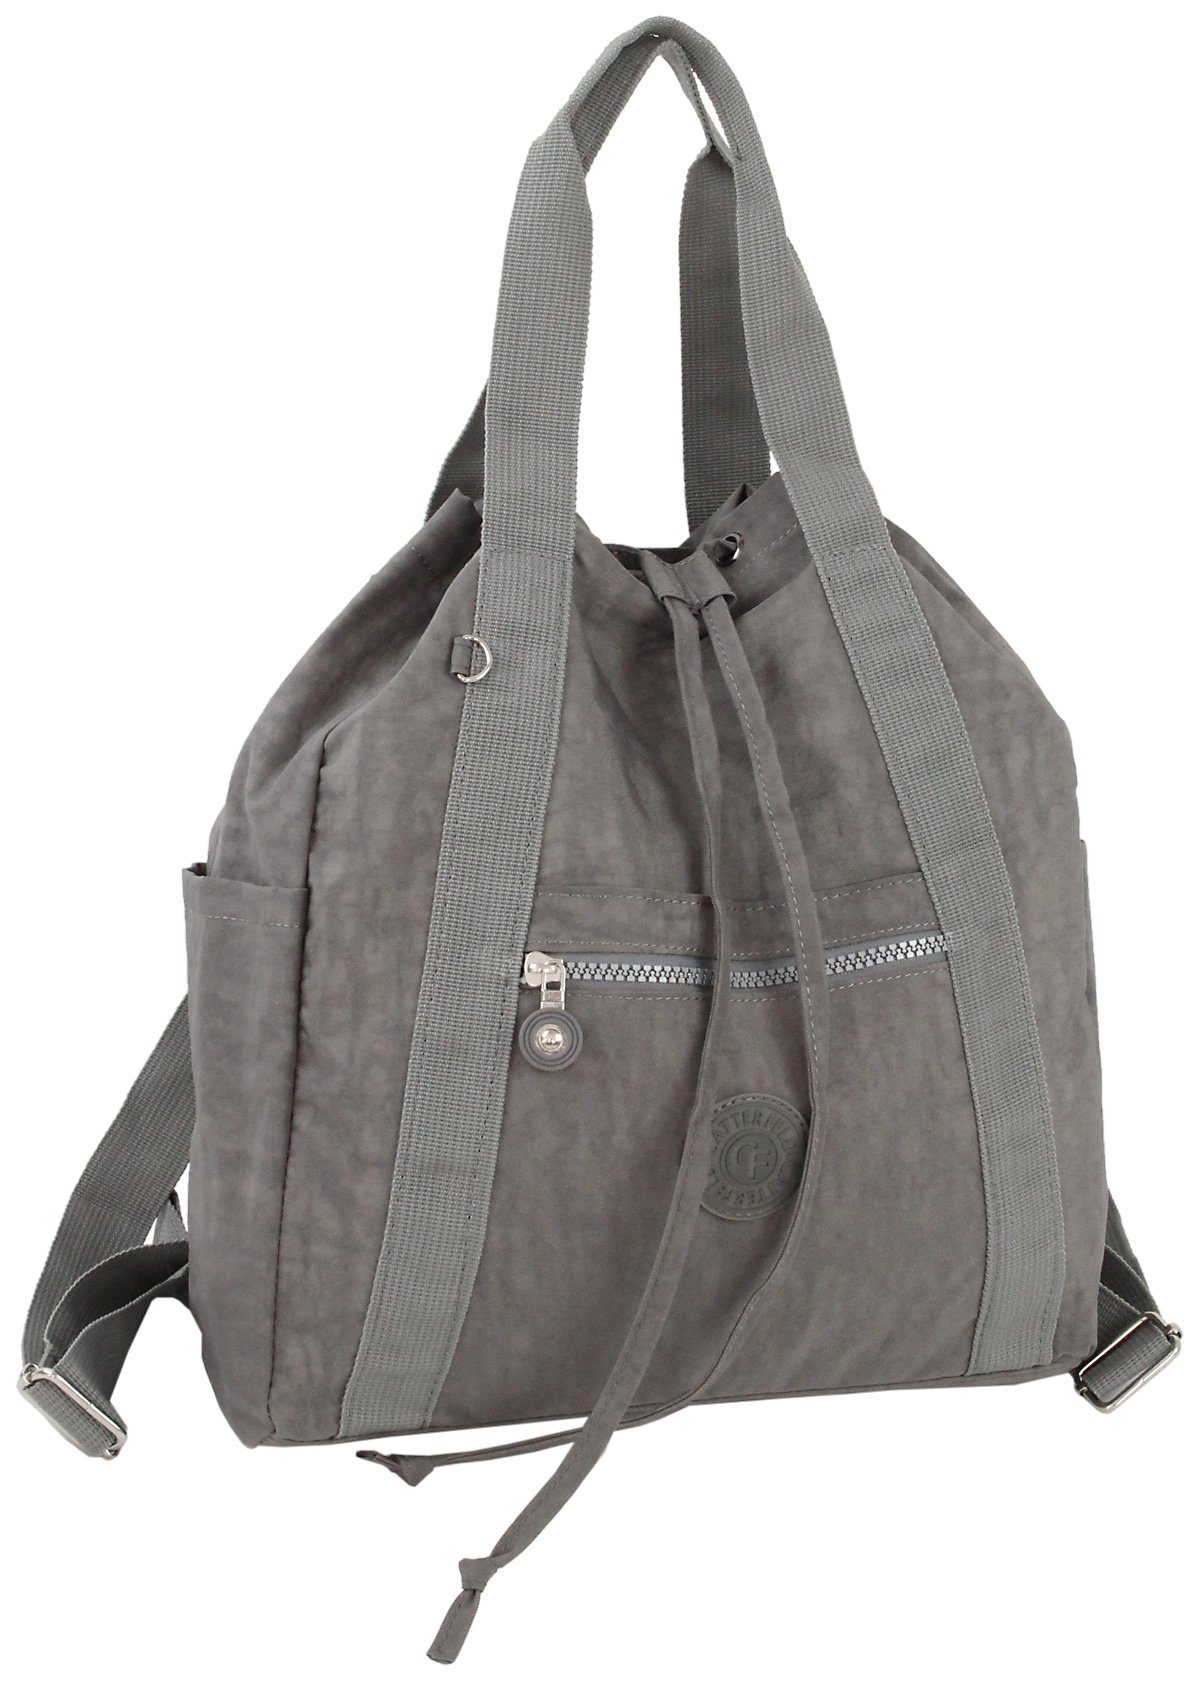 CF CATTERFELD Cityrucksack und Handtasche in Einem, 2in1 leichter Freizeitrucksack/Schultertasche, Leicht Grau | Rucksacktaschen